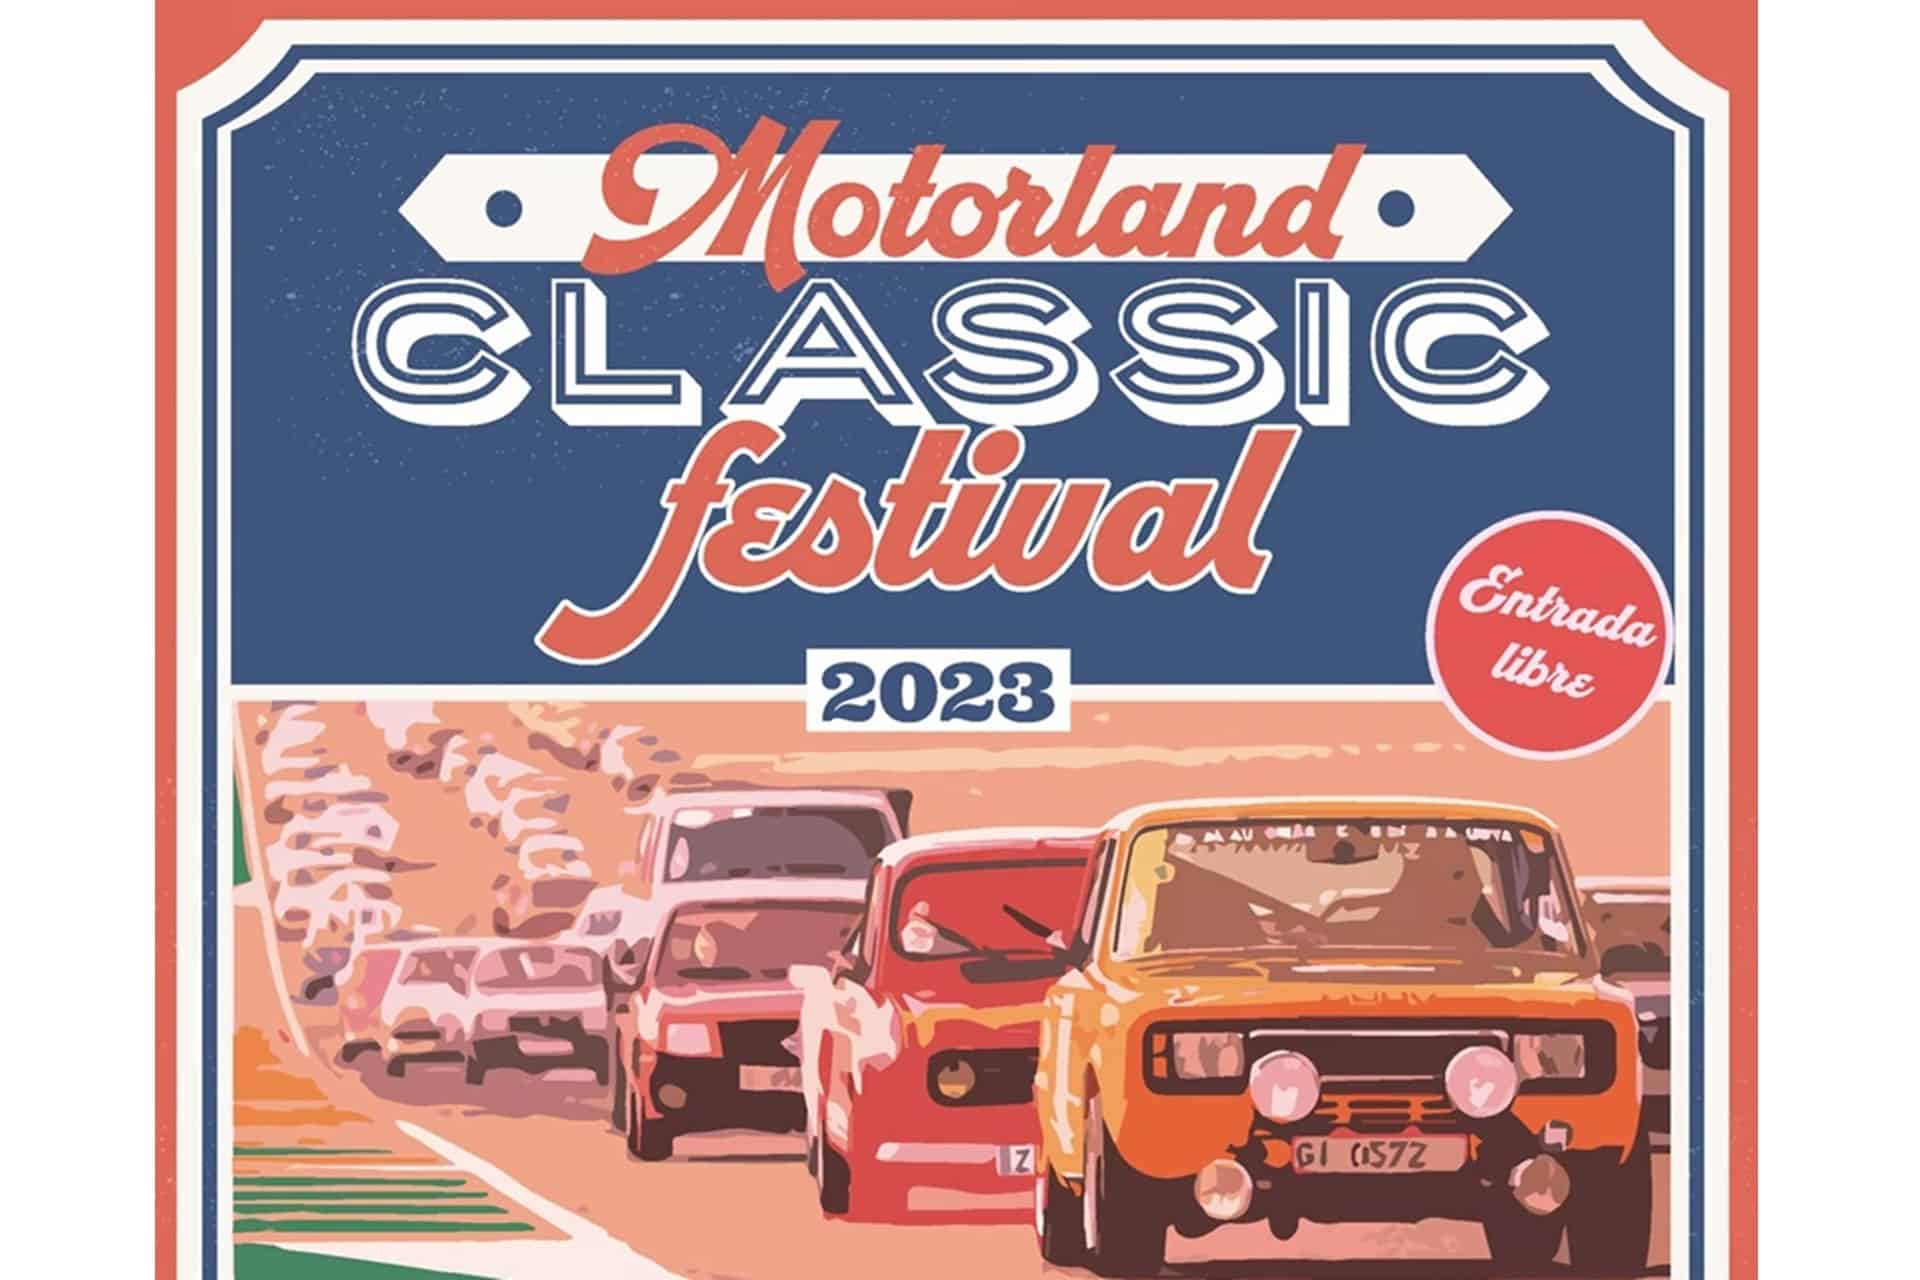 MotorLand Classic Festival 2023: ¡La fiesta de los clásicos os espera!